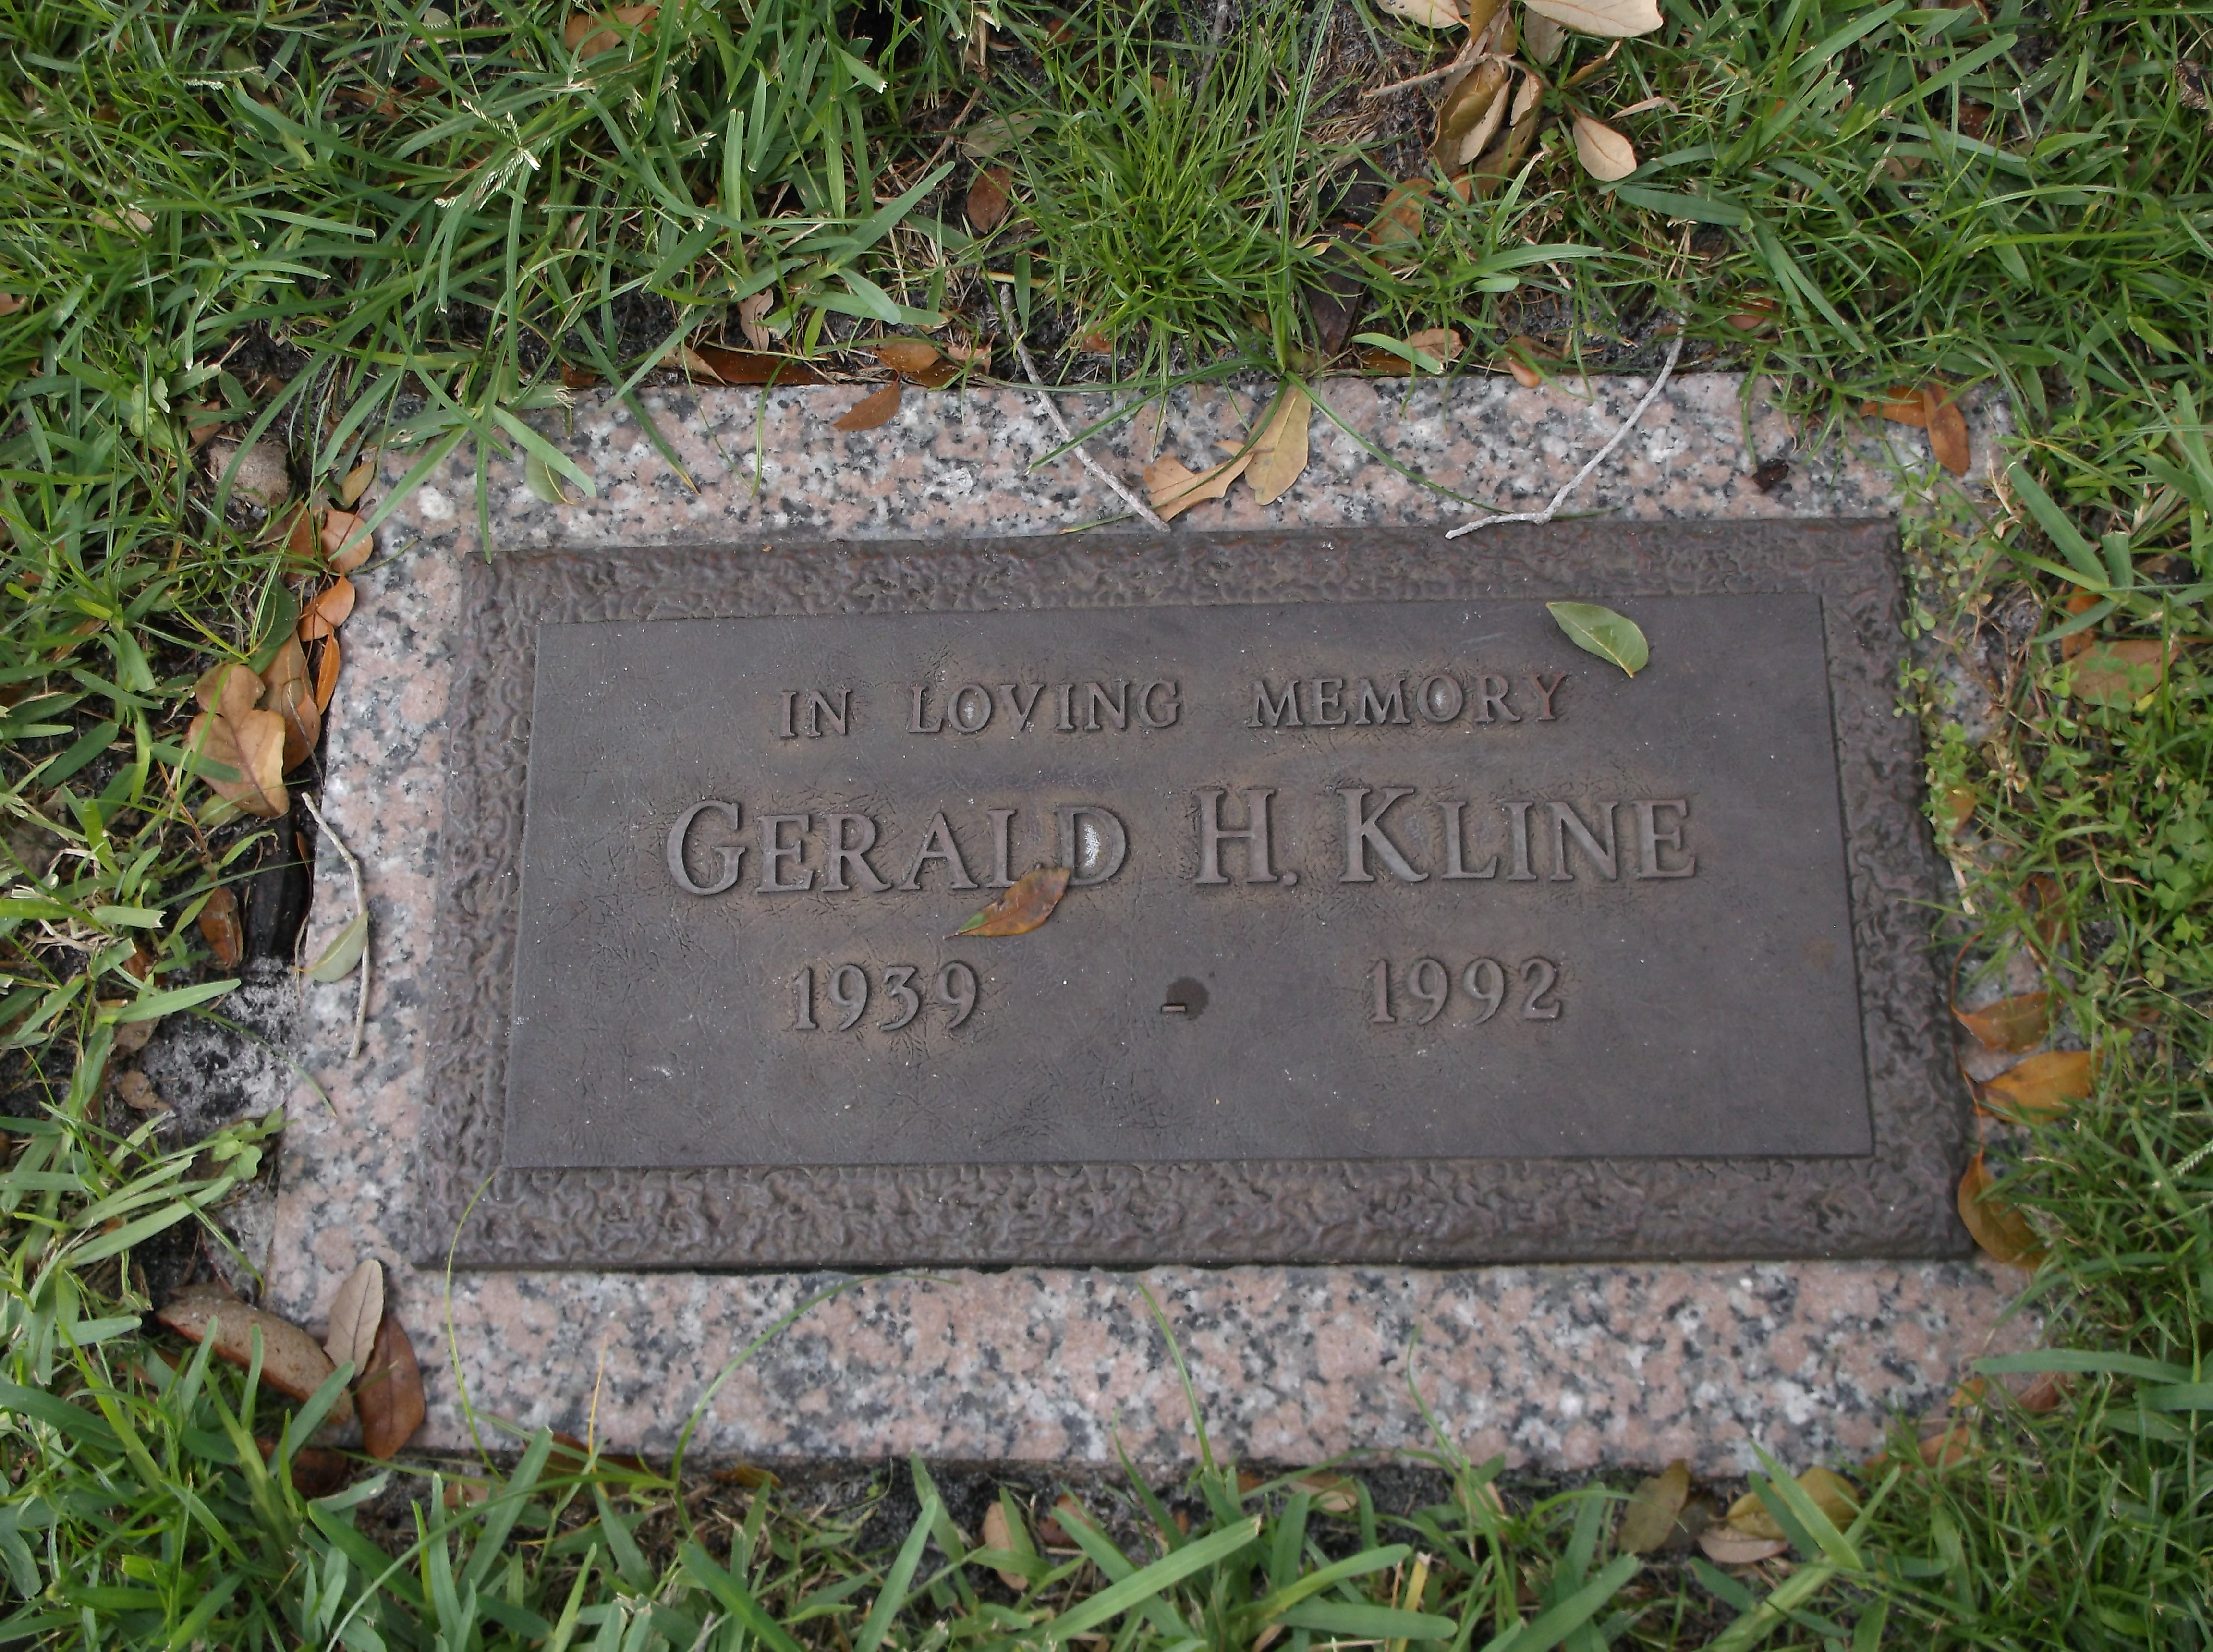 Gerald H Kline